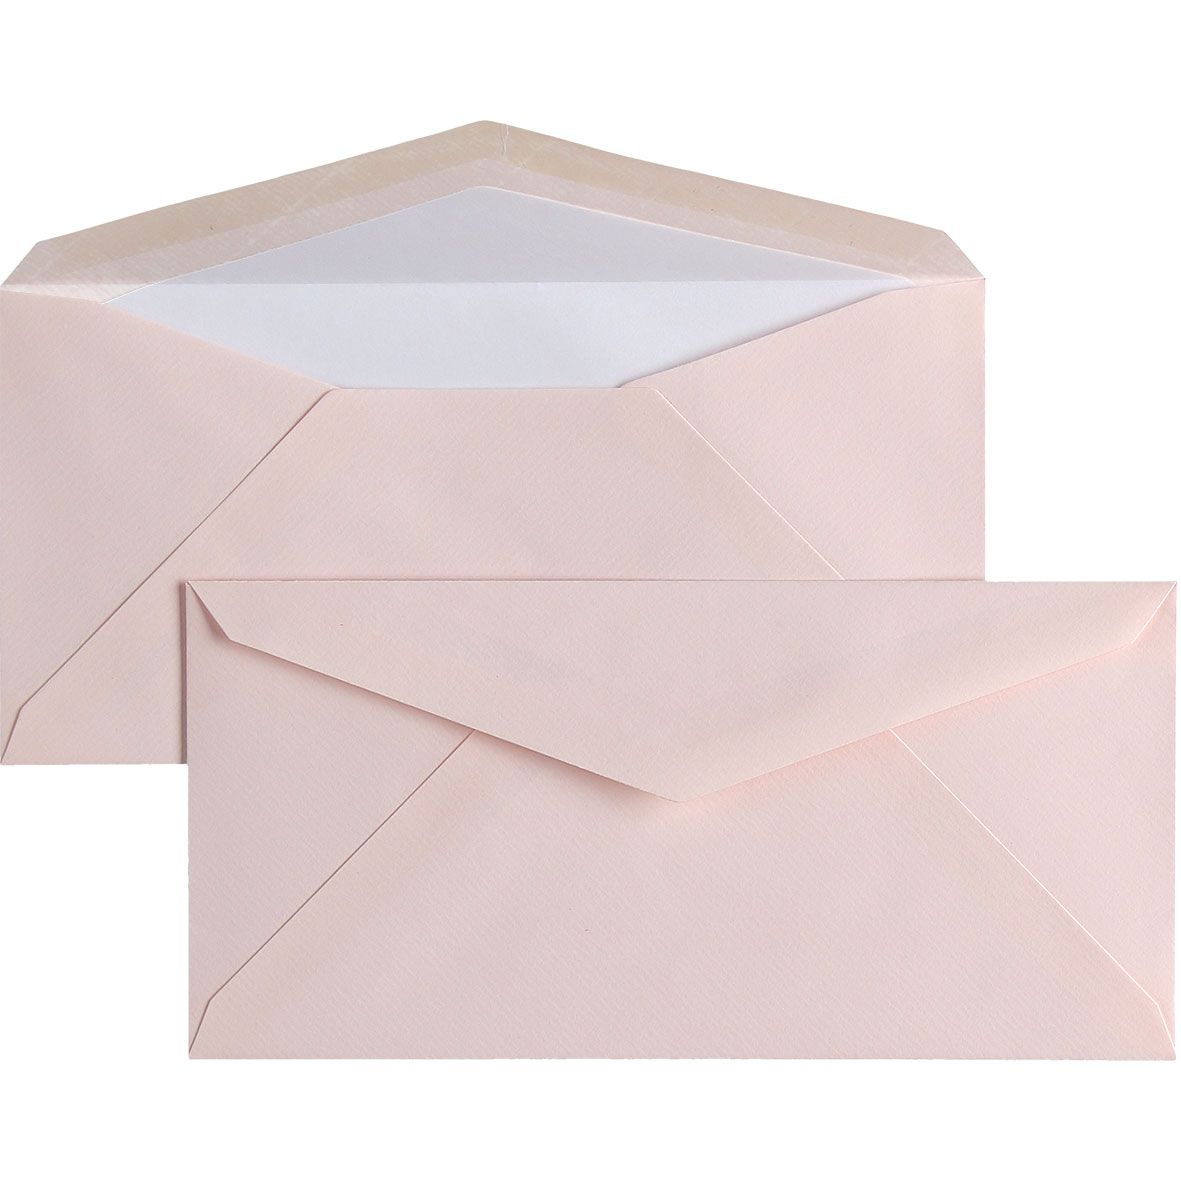 25 enveloppes Vergé format DL - 11 x 22.5 cm - 100 g/m² - Blanc - 5413036104614